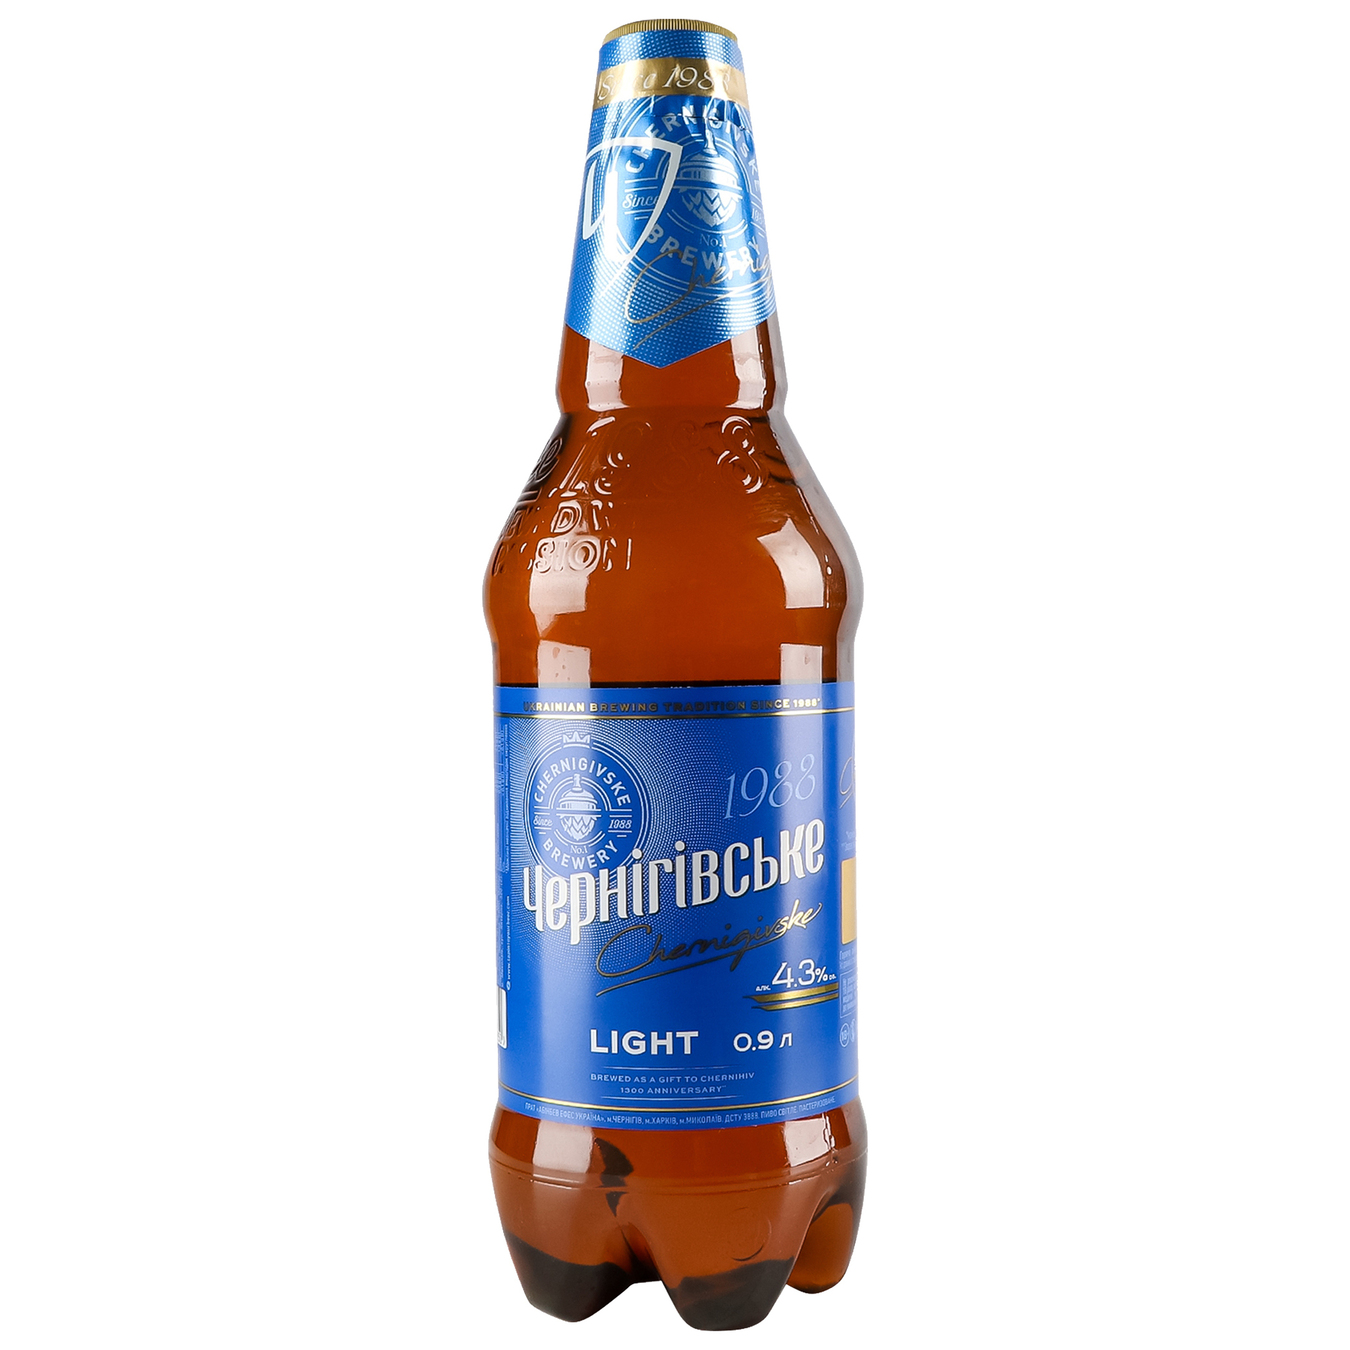 Beer Chernihivske Light 5% 0.9 l